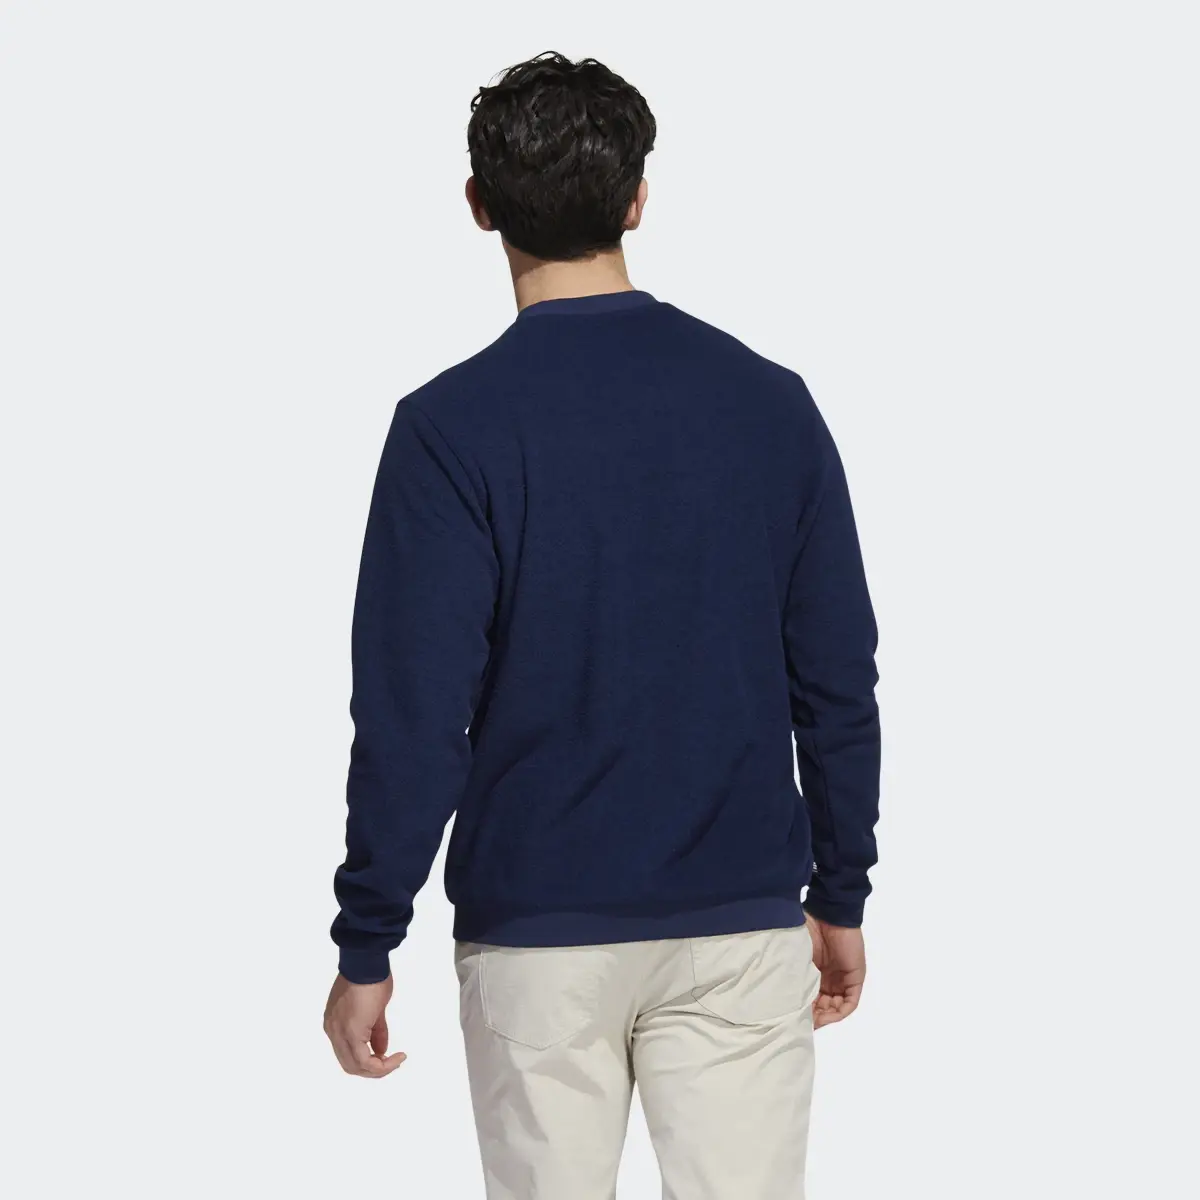 Adidas Core Sweatshirt. 3